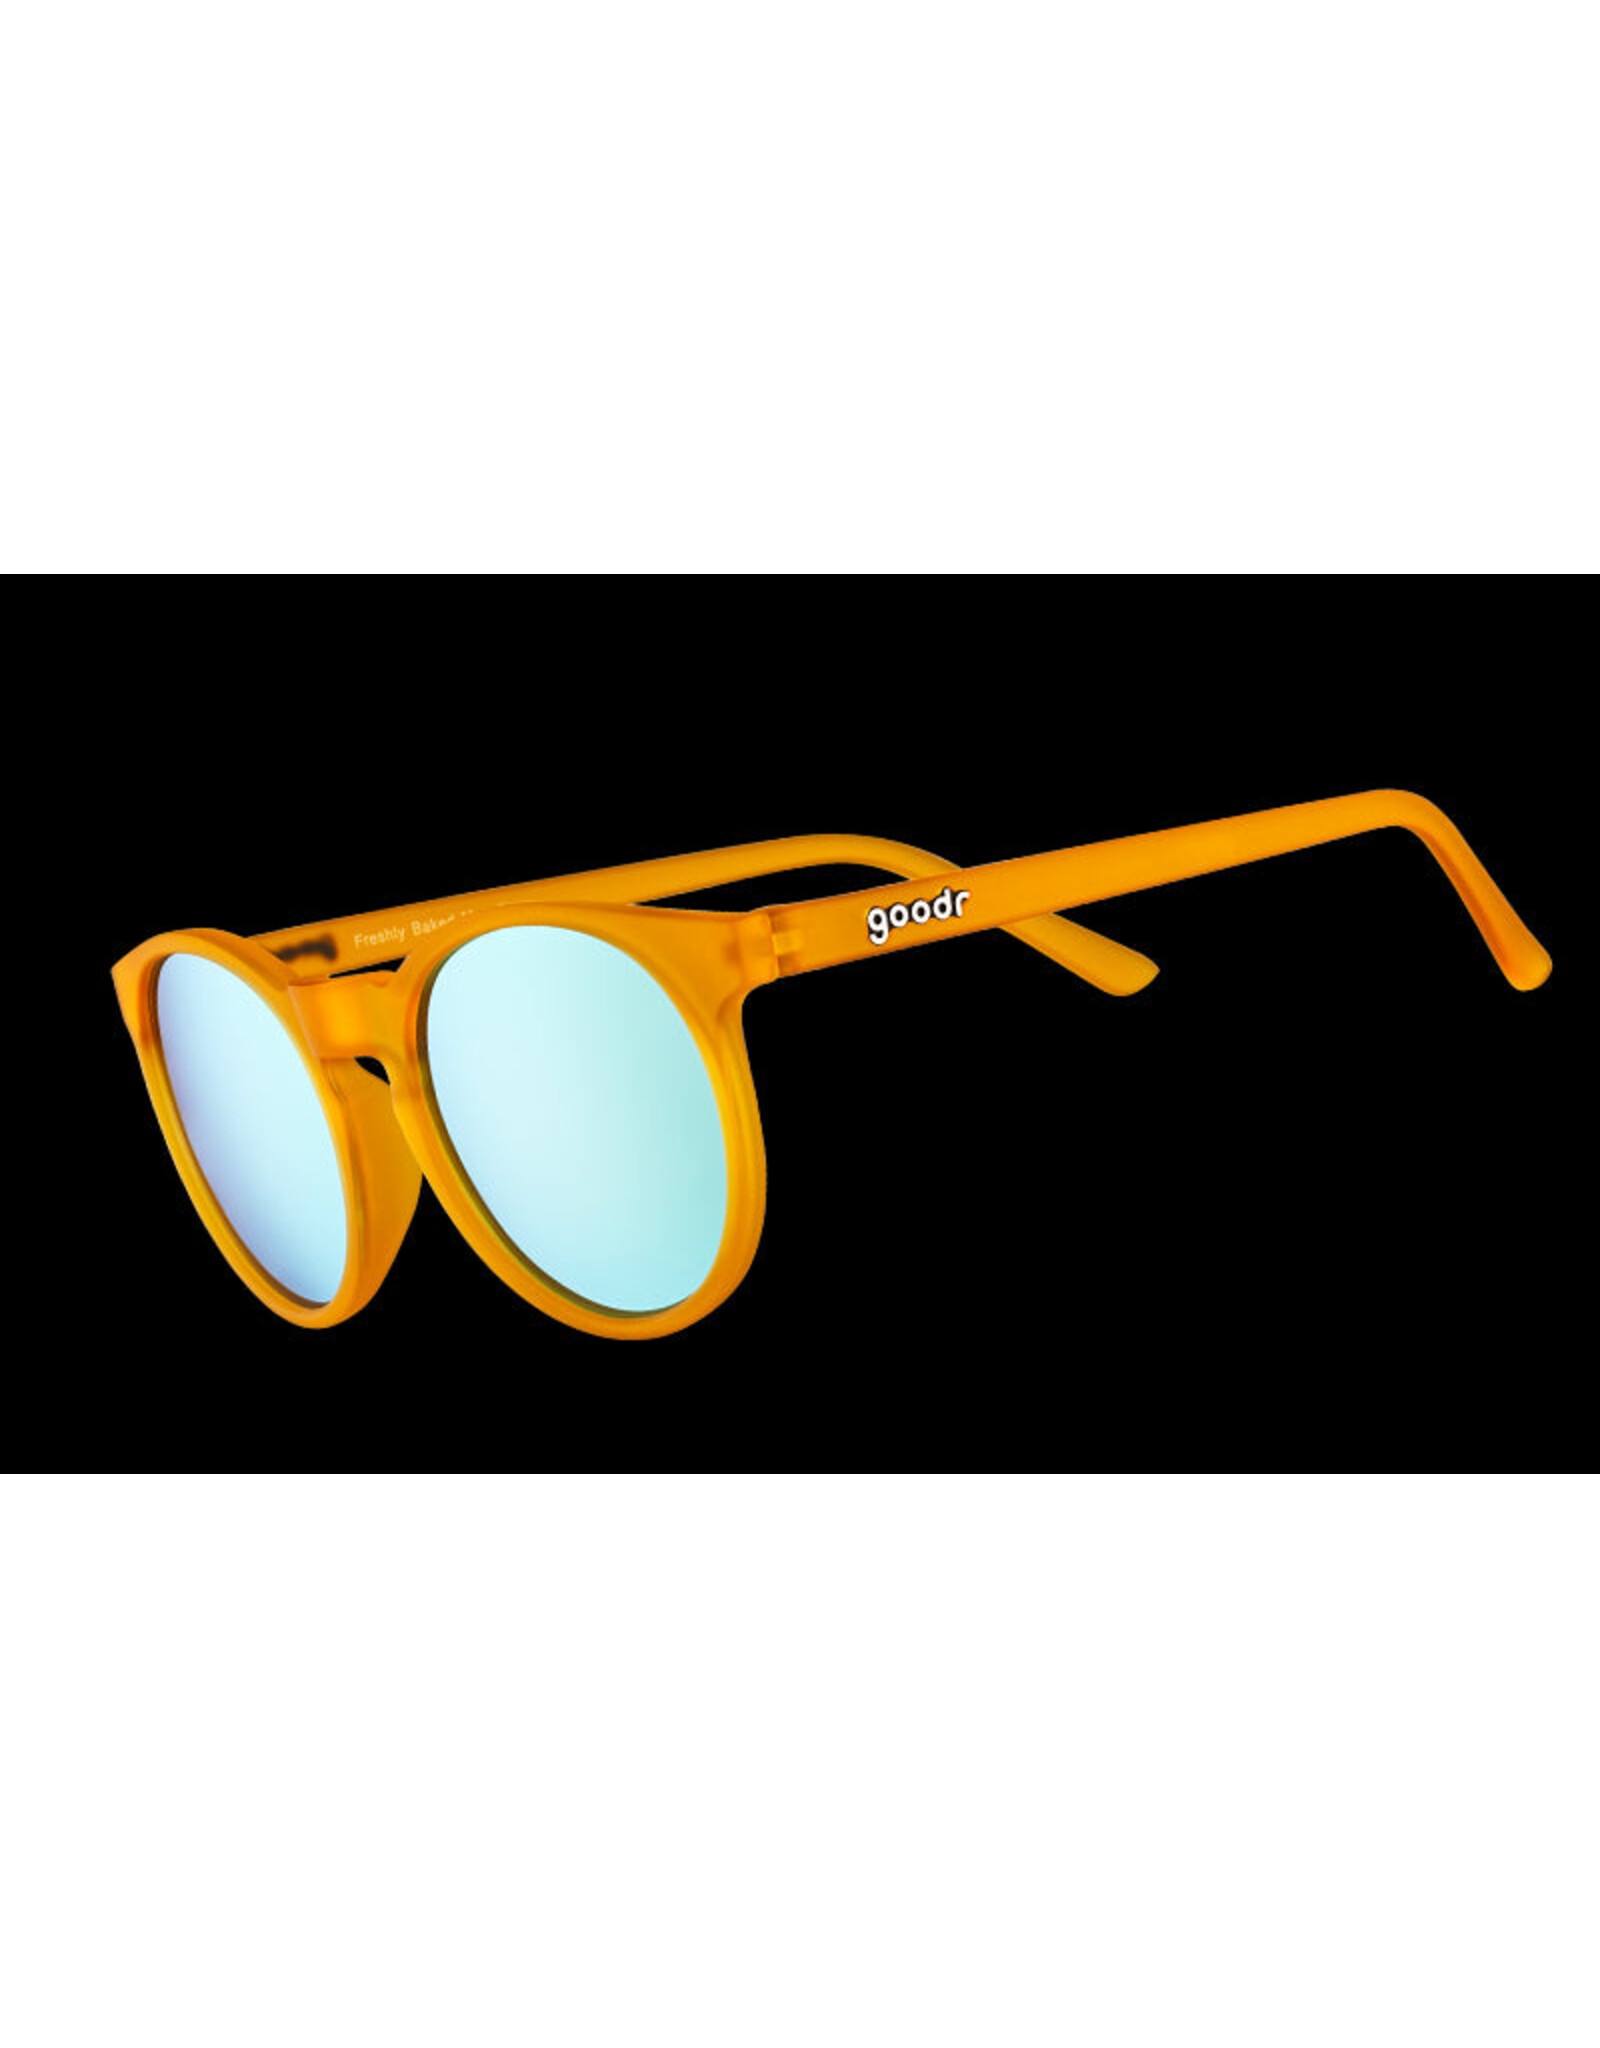 Goodr Sunglasses Goodr Circle Glasses